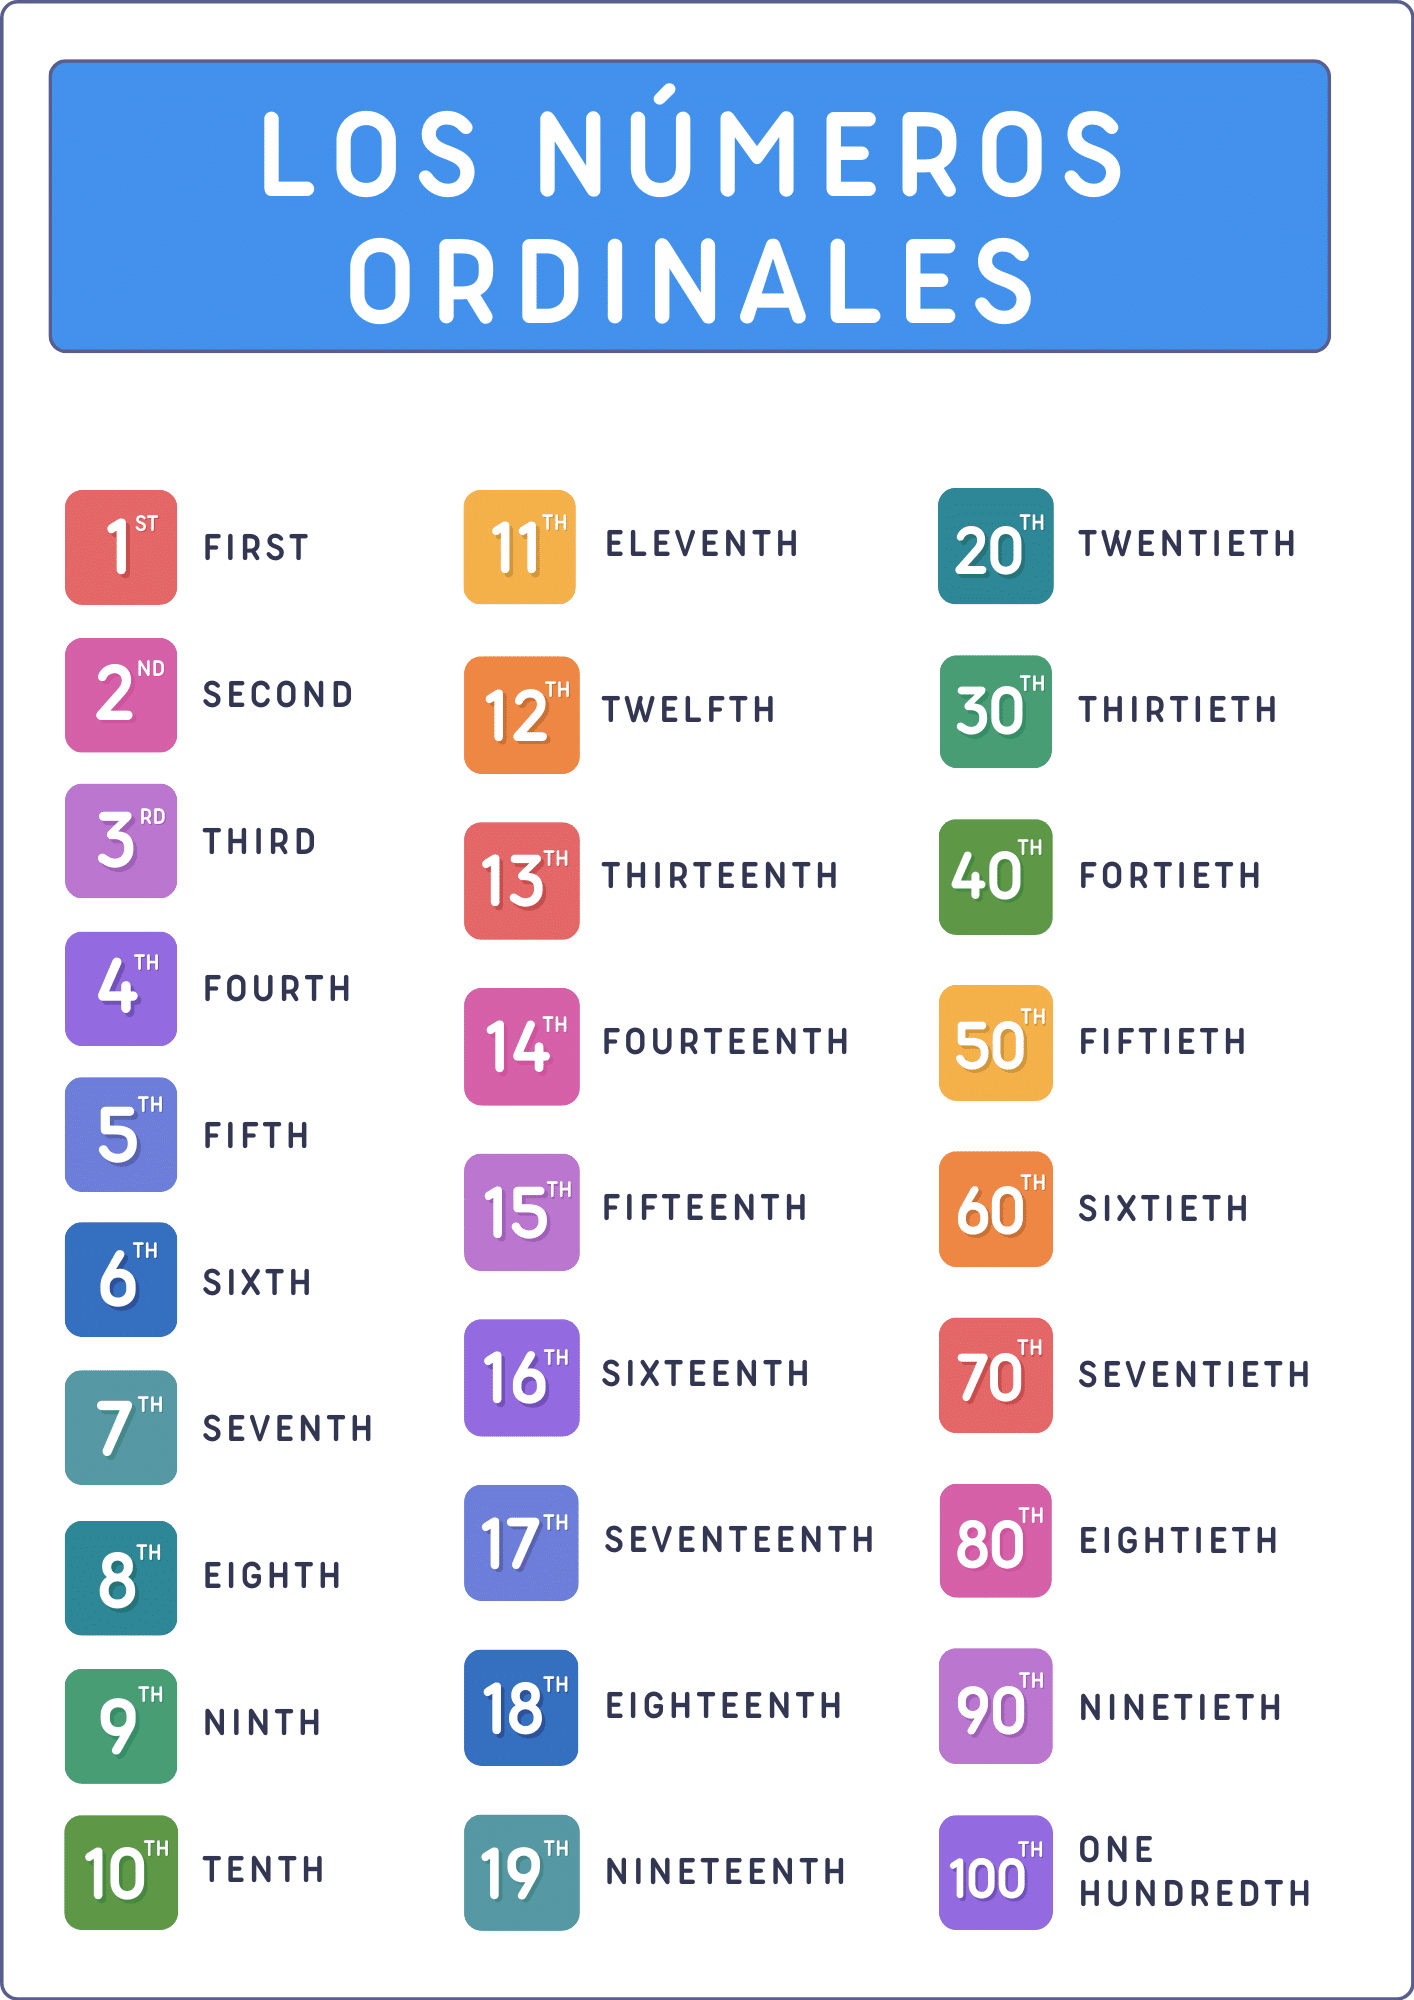 Números ordinales en ingles, del 1 al 16.  Numeros ordinales en ingles,  Como aprender ingles basico, Cosas de ingles